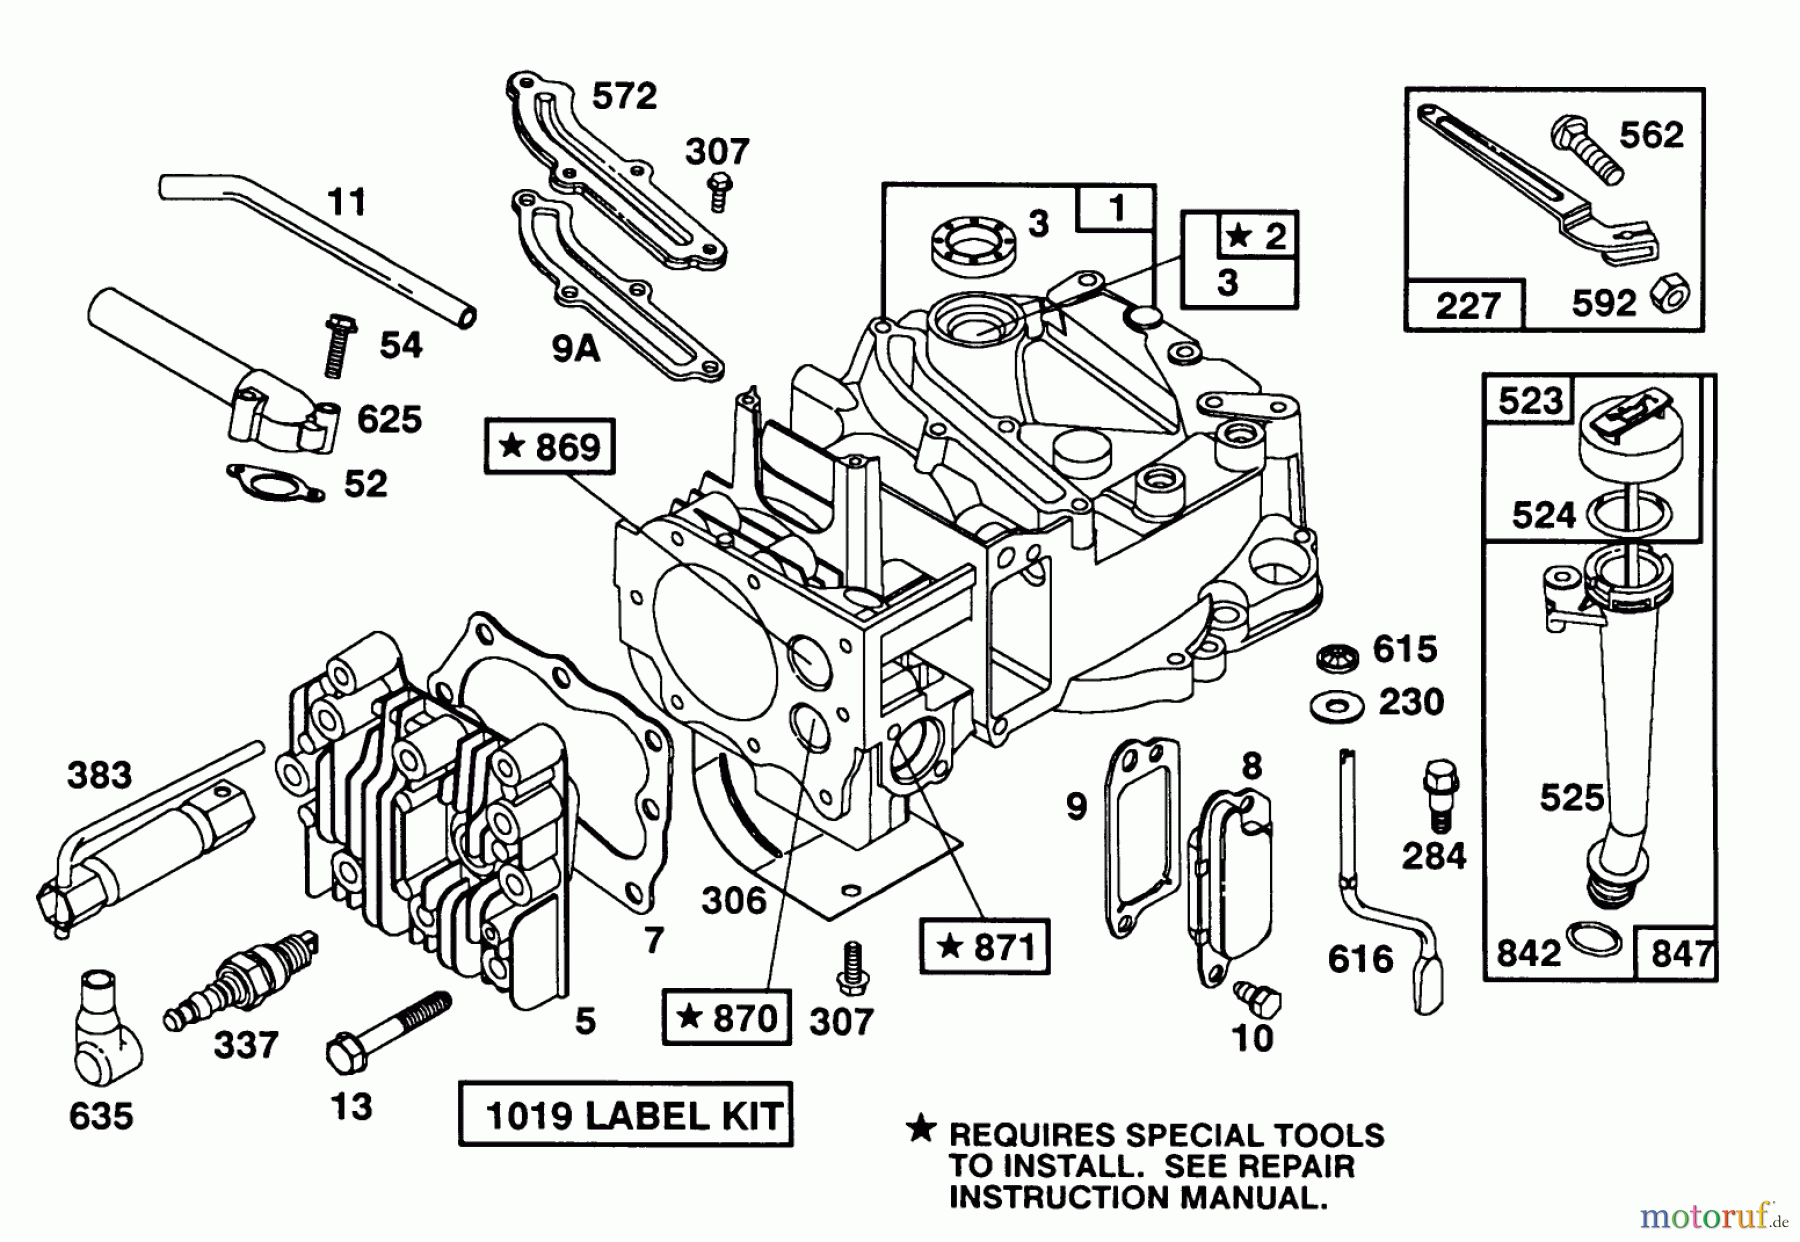  Toro Neu Mowers, Walk-Behind Seite 1 20563 - Toro Lawnmower, 1991 (1000001-1999999) ENGINE MODEL 124702-3115-01 #1